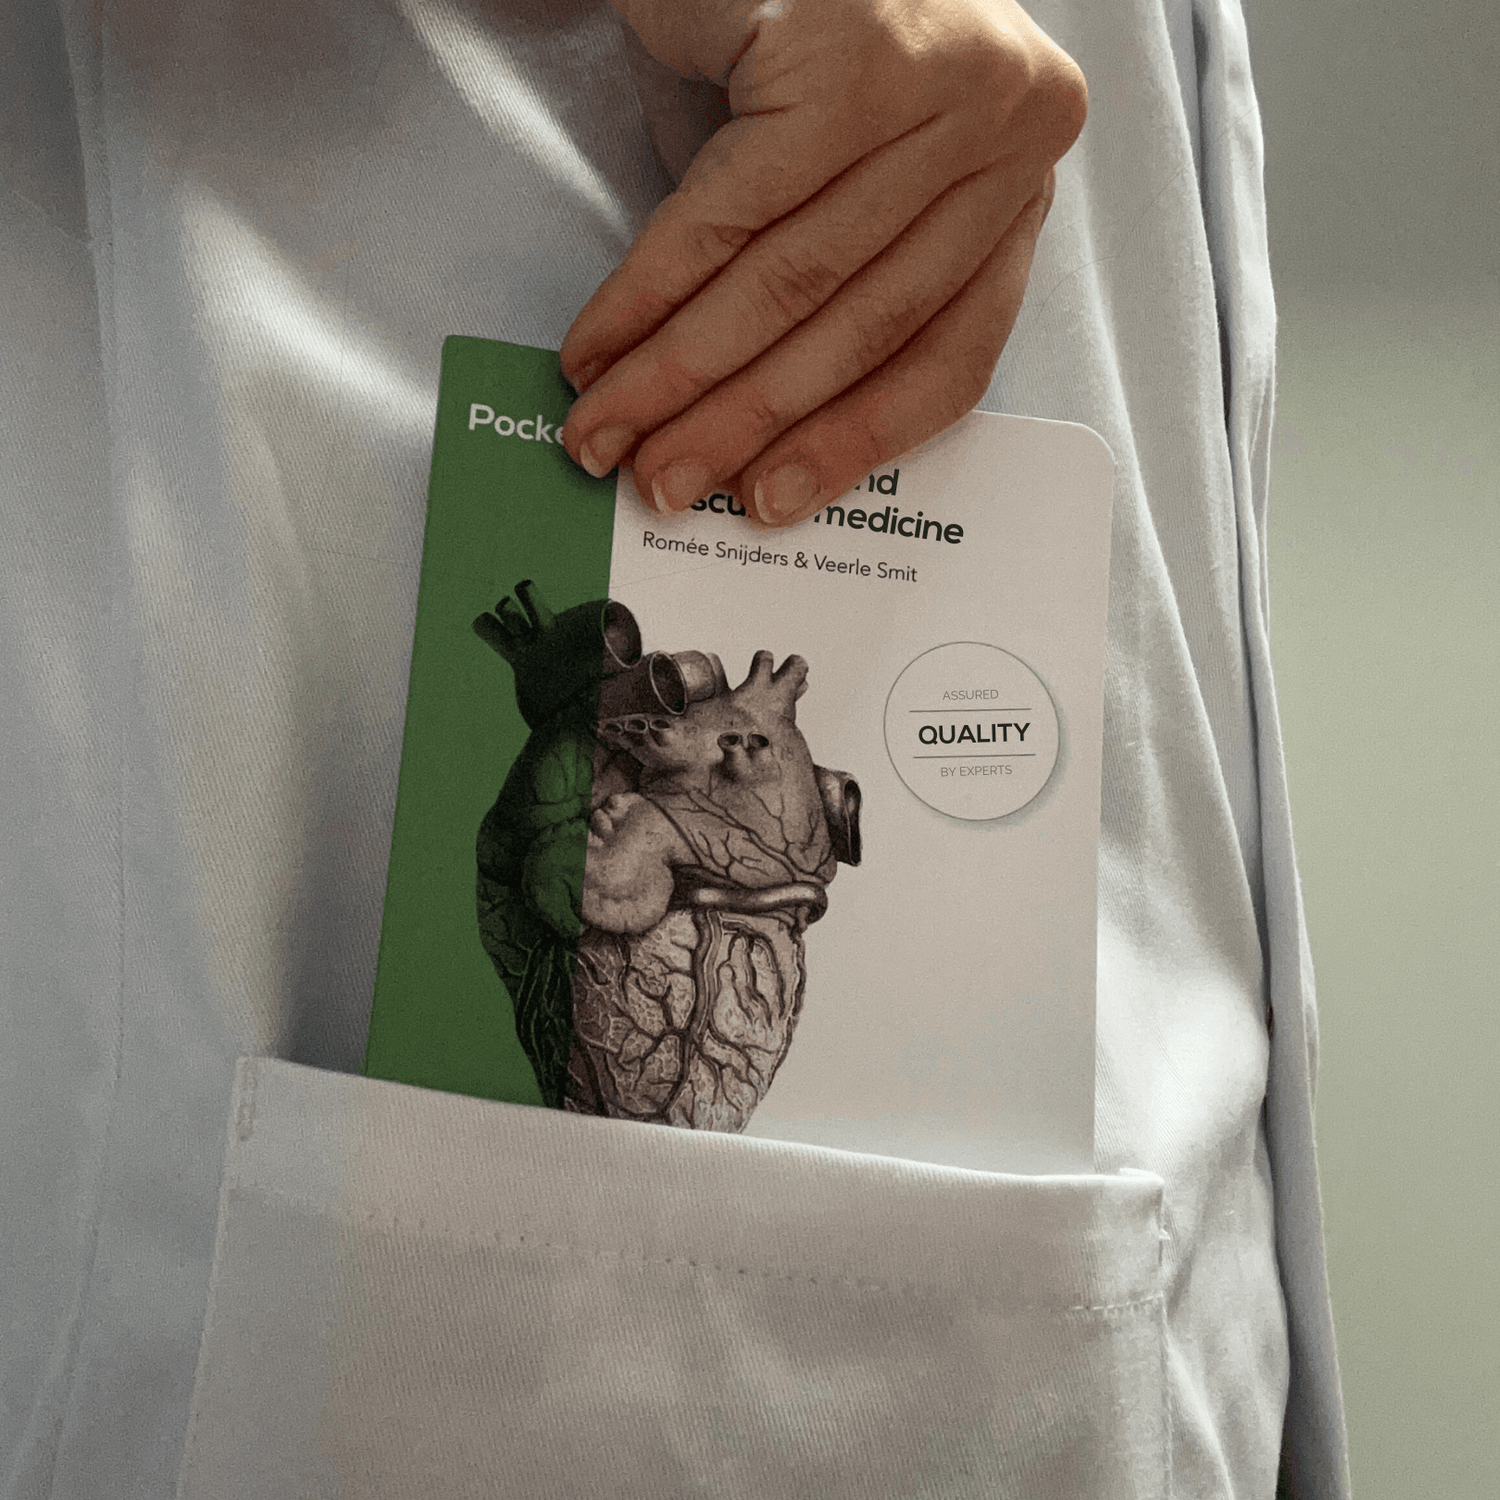 Compendium Medicine Cardiology pocket in white coat